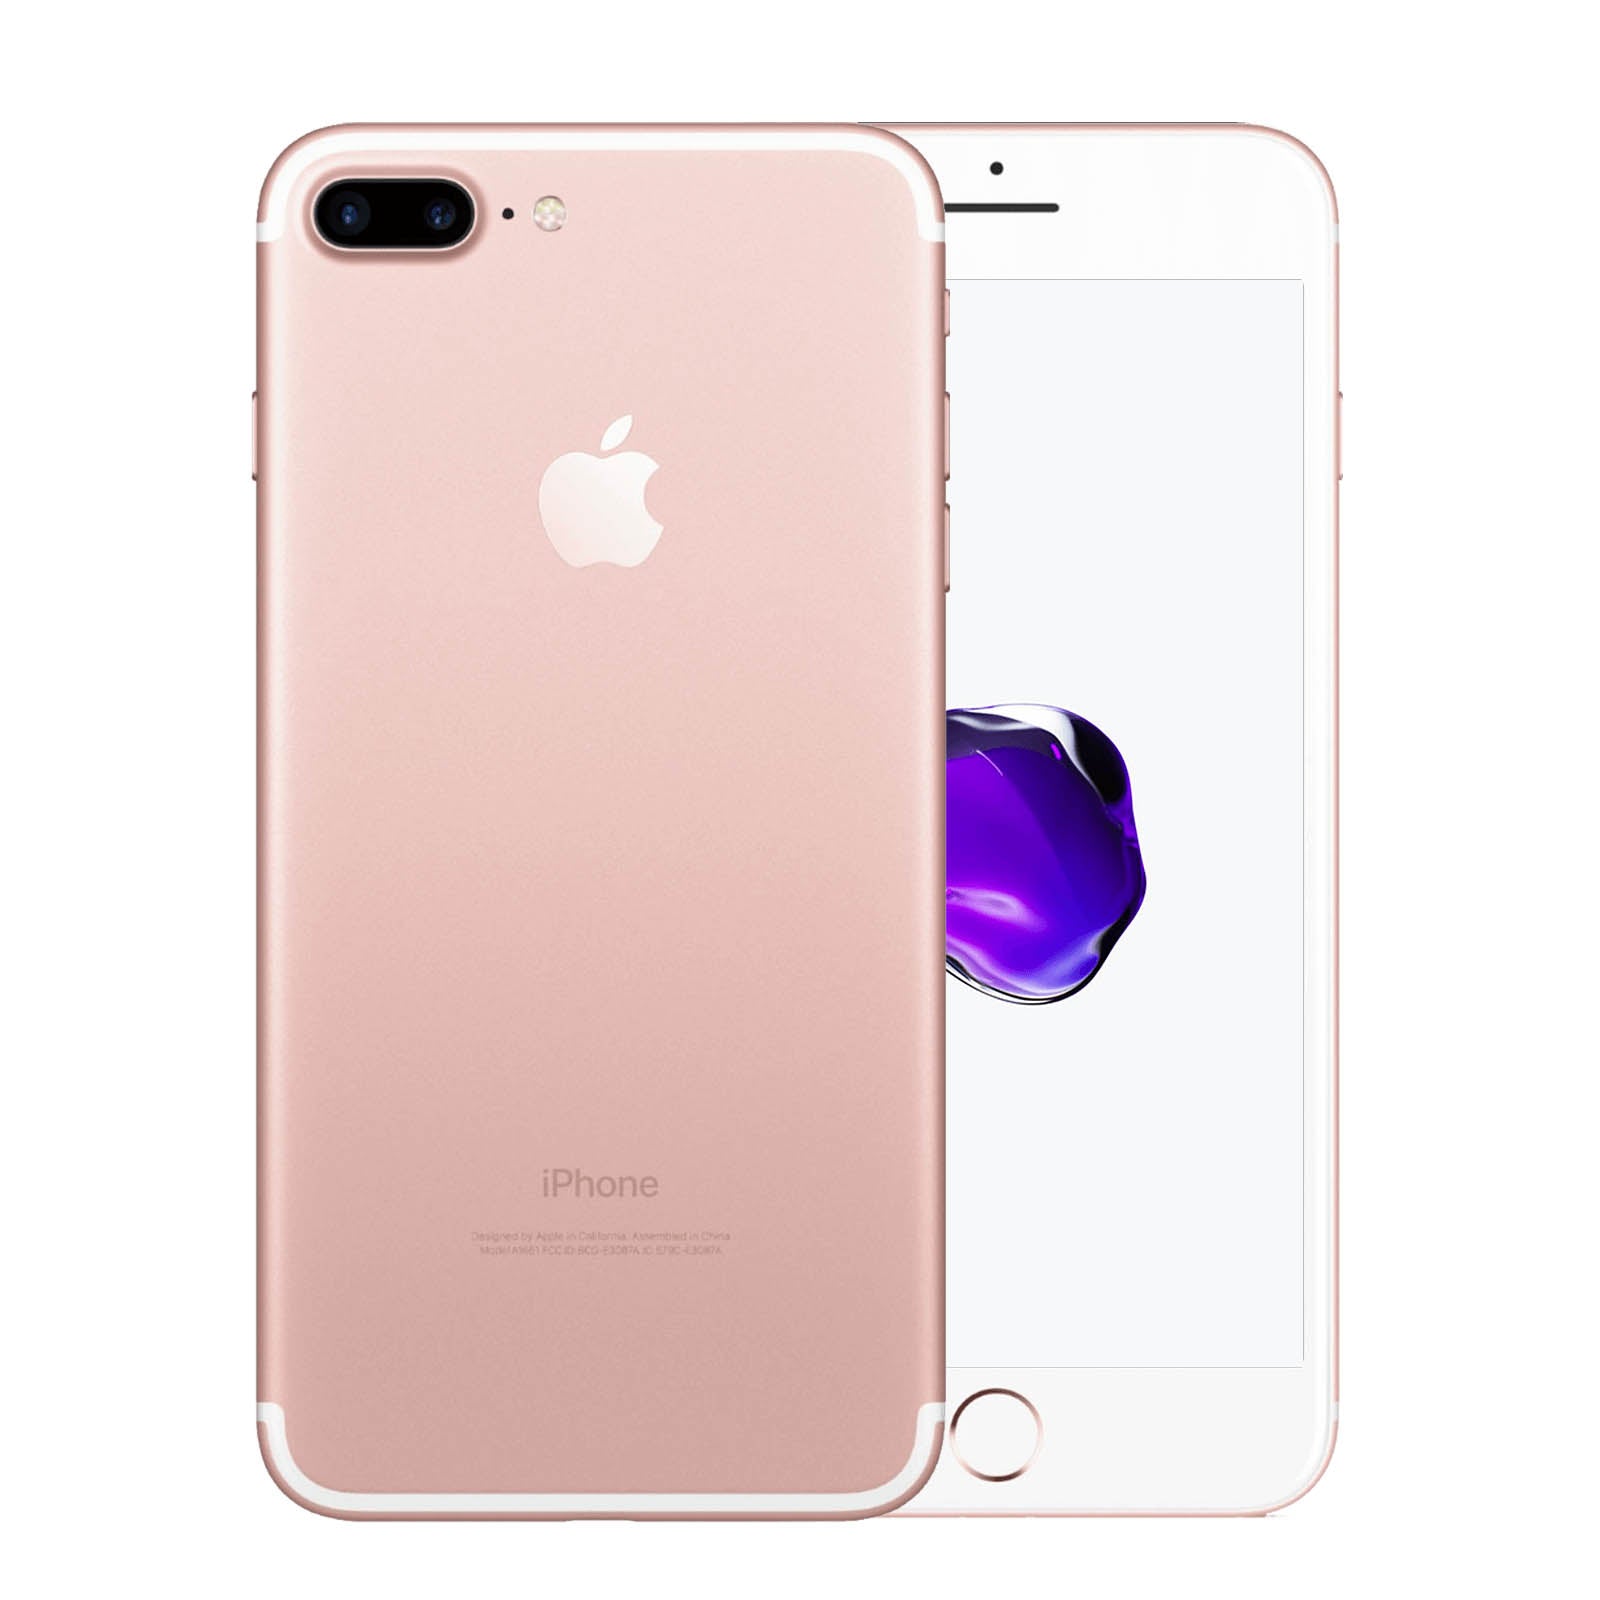 Apple iPhone 7 Plus 256GB Rose Gold Fair - Unlocked